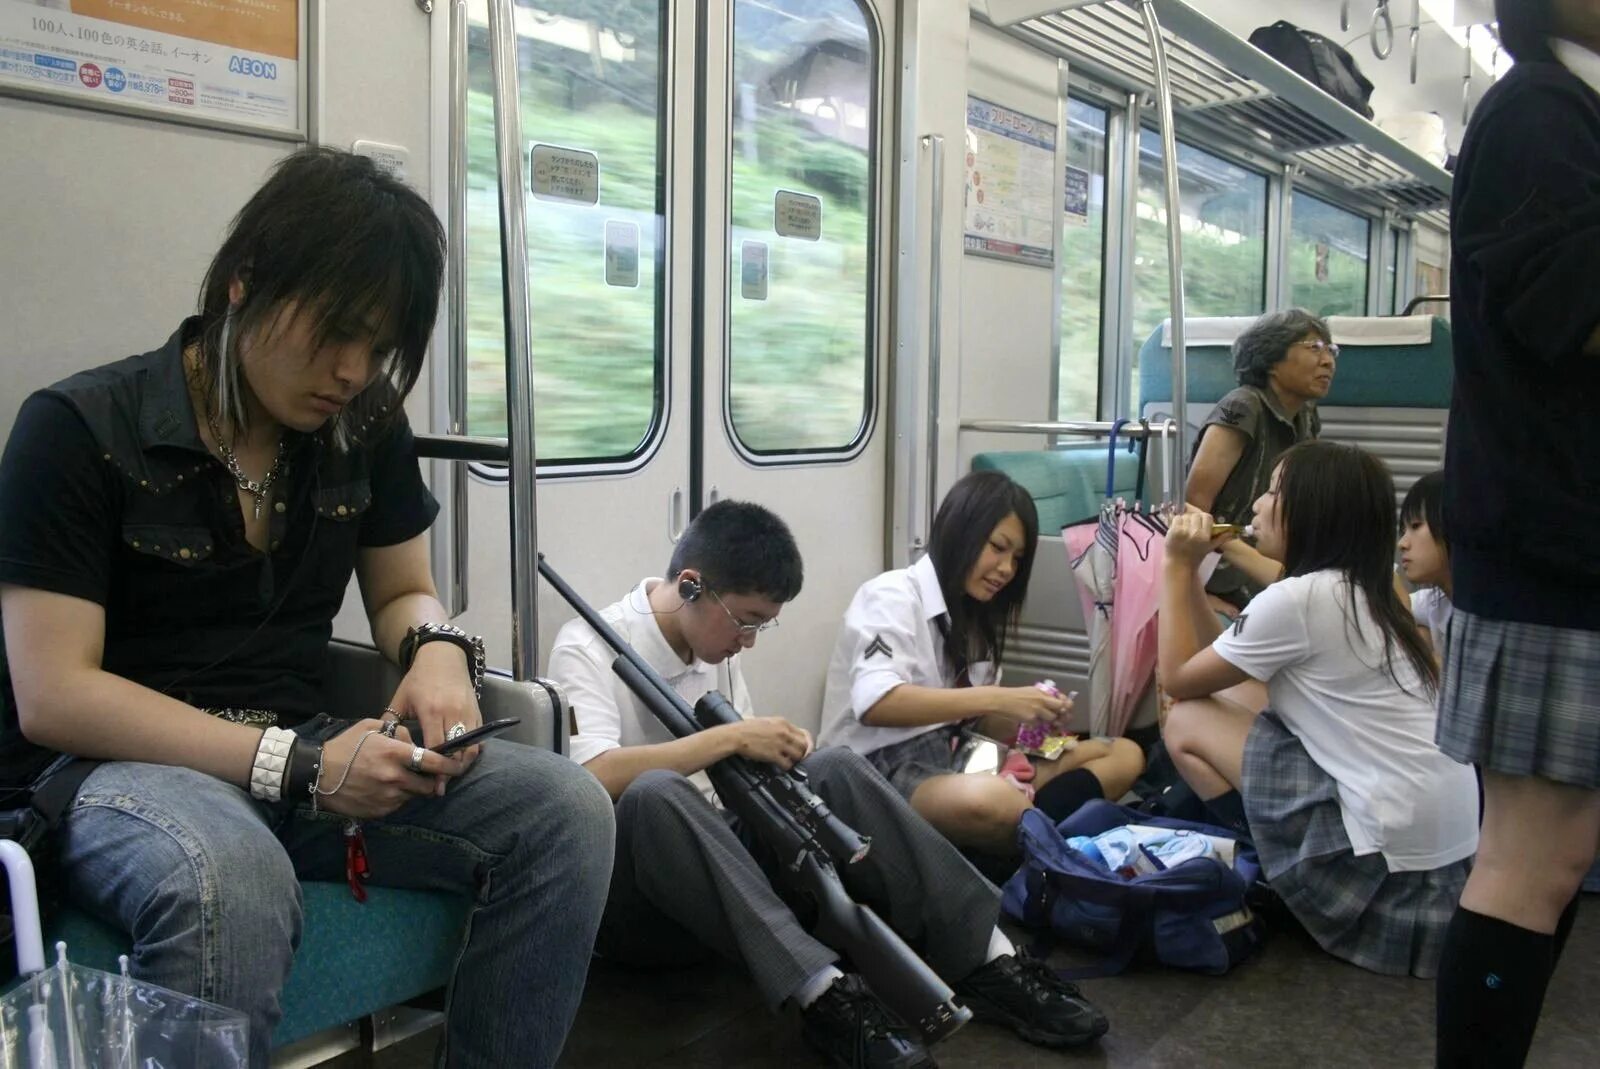 Японцы в транспорте. Японский общественный транспорт. Японские девушки в общественном транспорте. Японское метро. Японское метро без цензуры